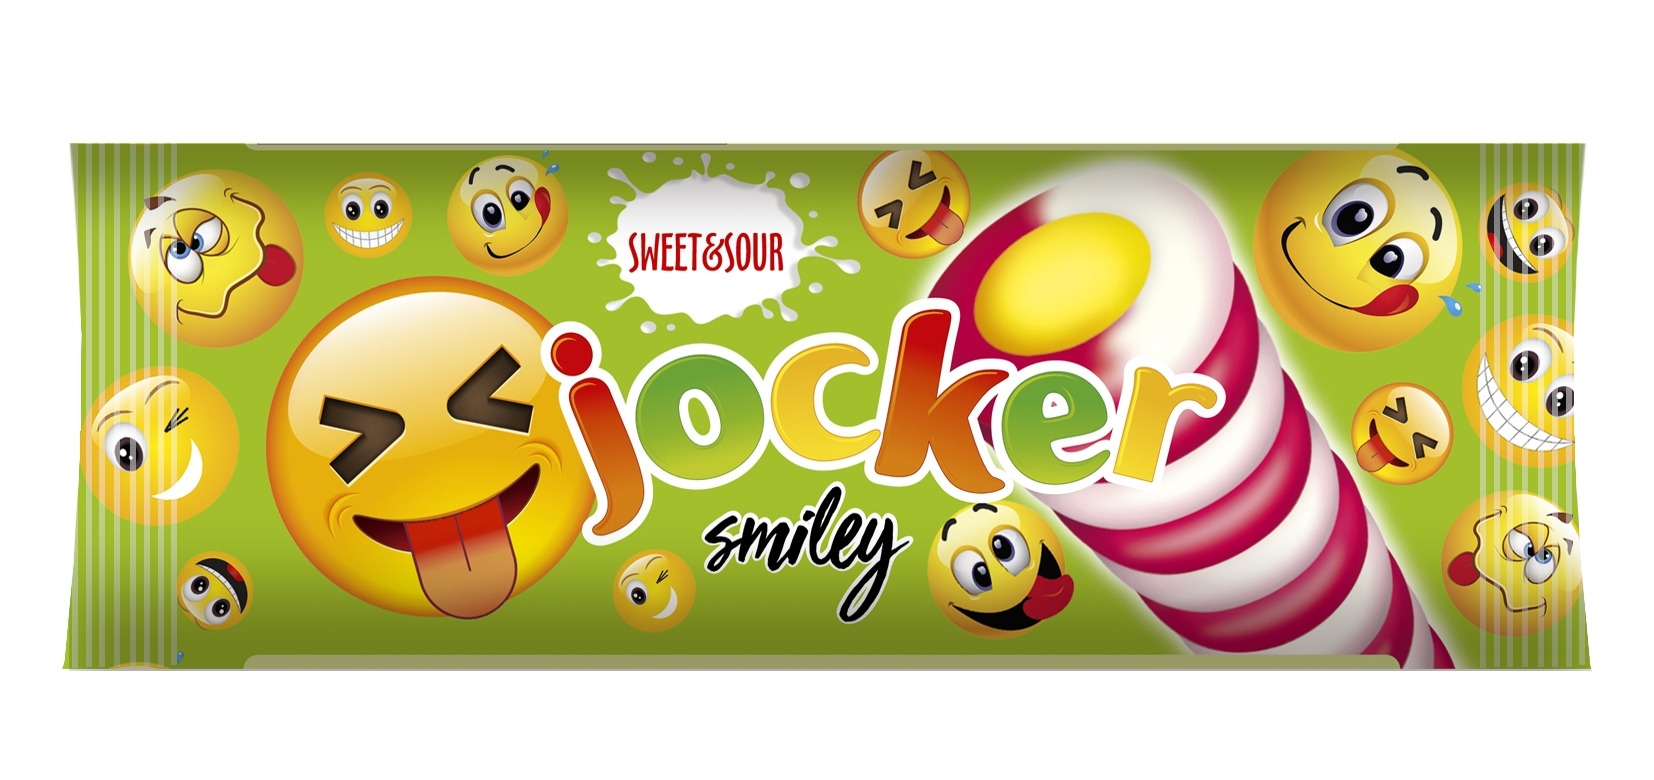 Jocker smiley sweet&sour